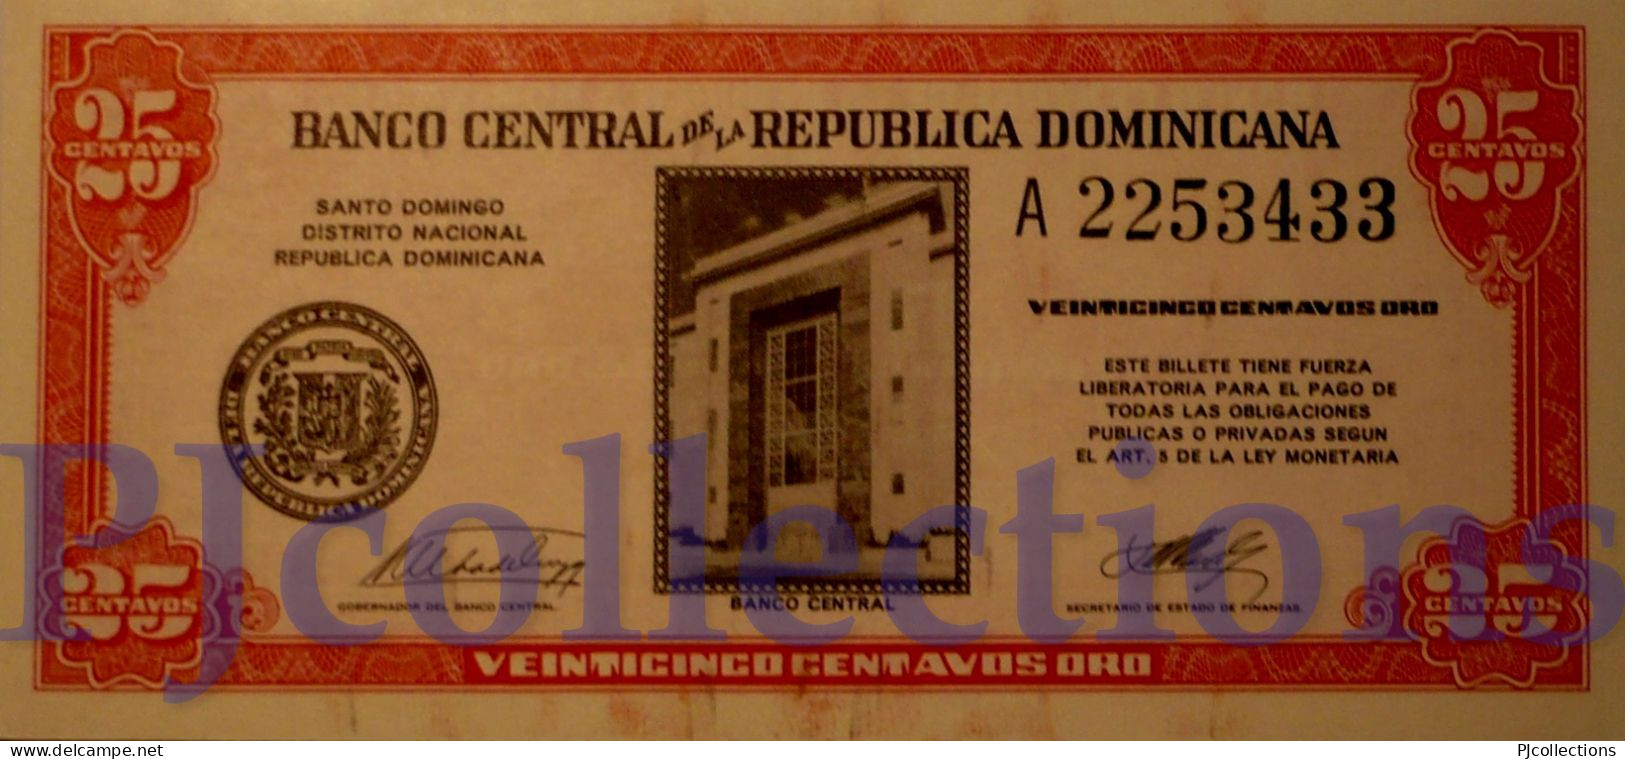 DOMINICAN REPUBLIC 25 CENTAVOS 1961 PICK 87a UNC - Dominikanische Rep.